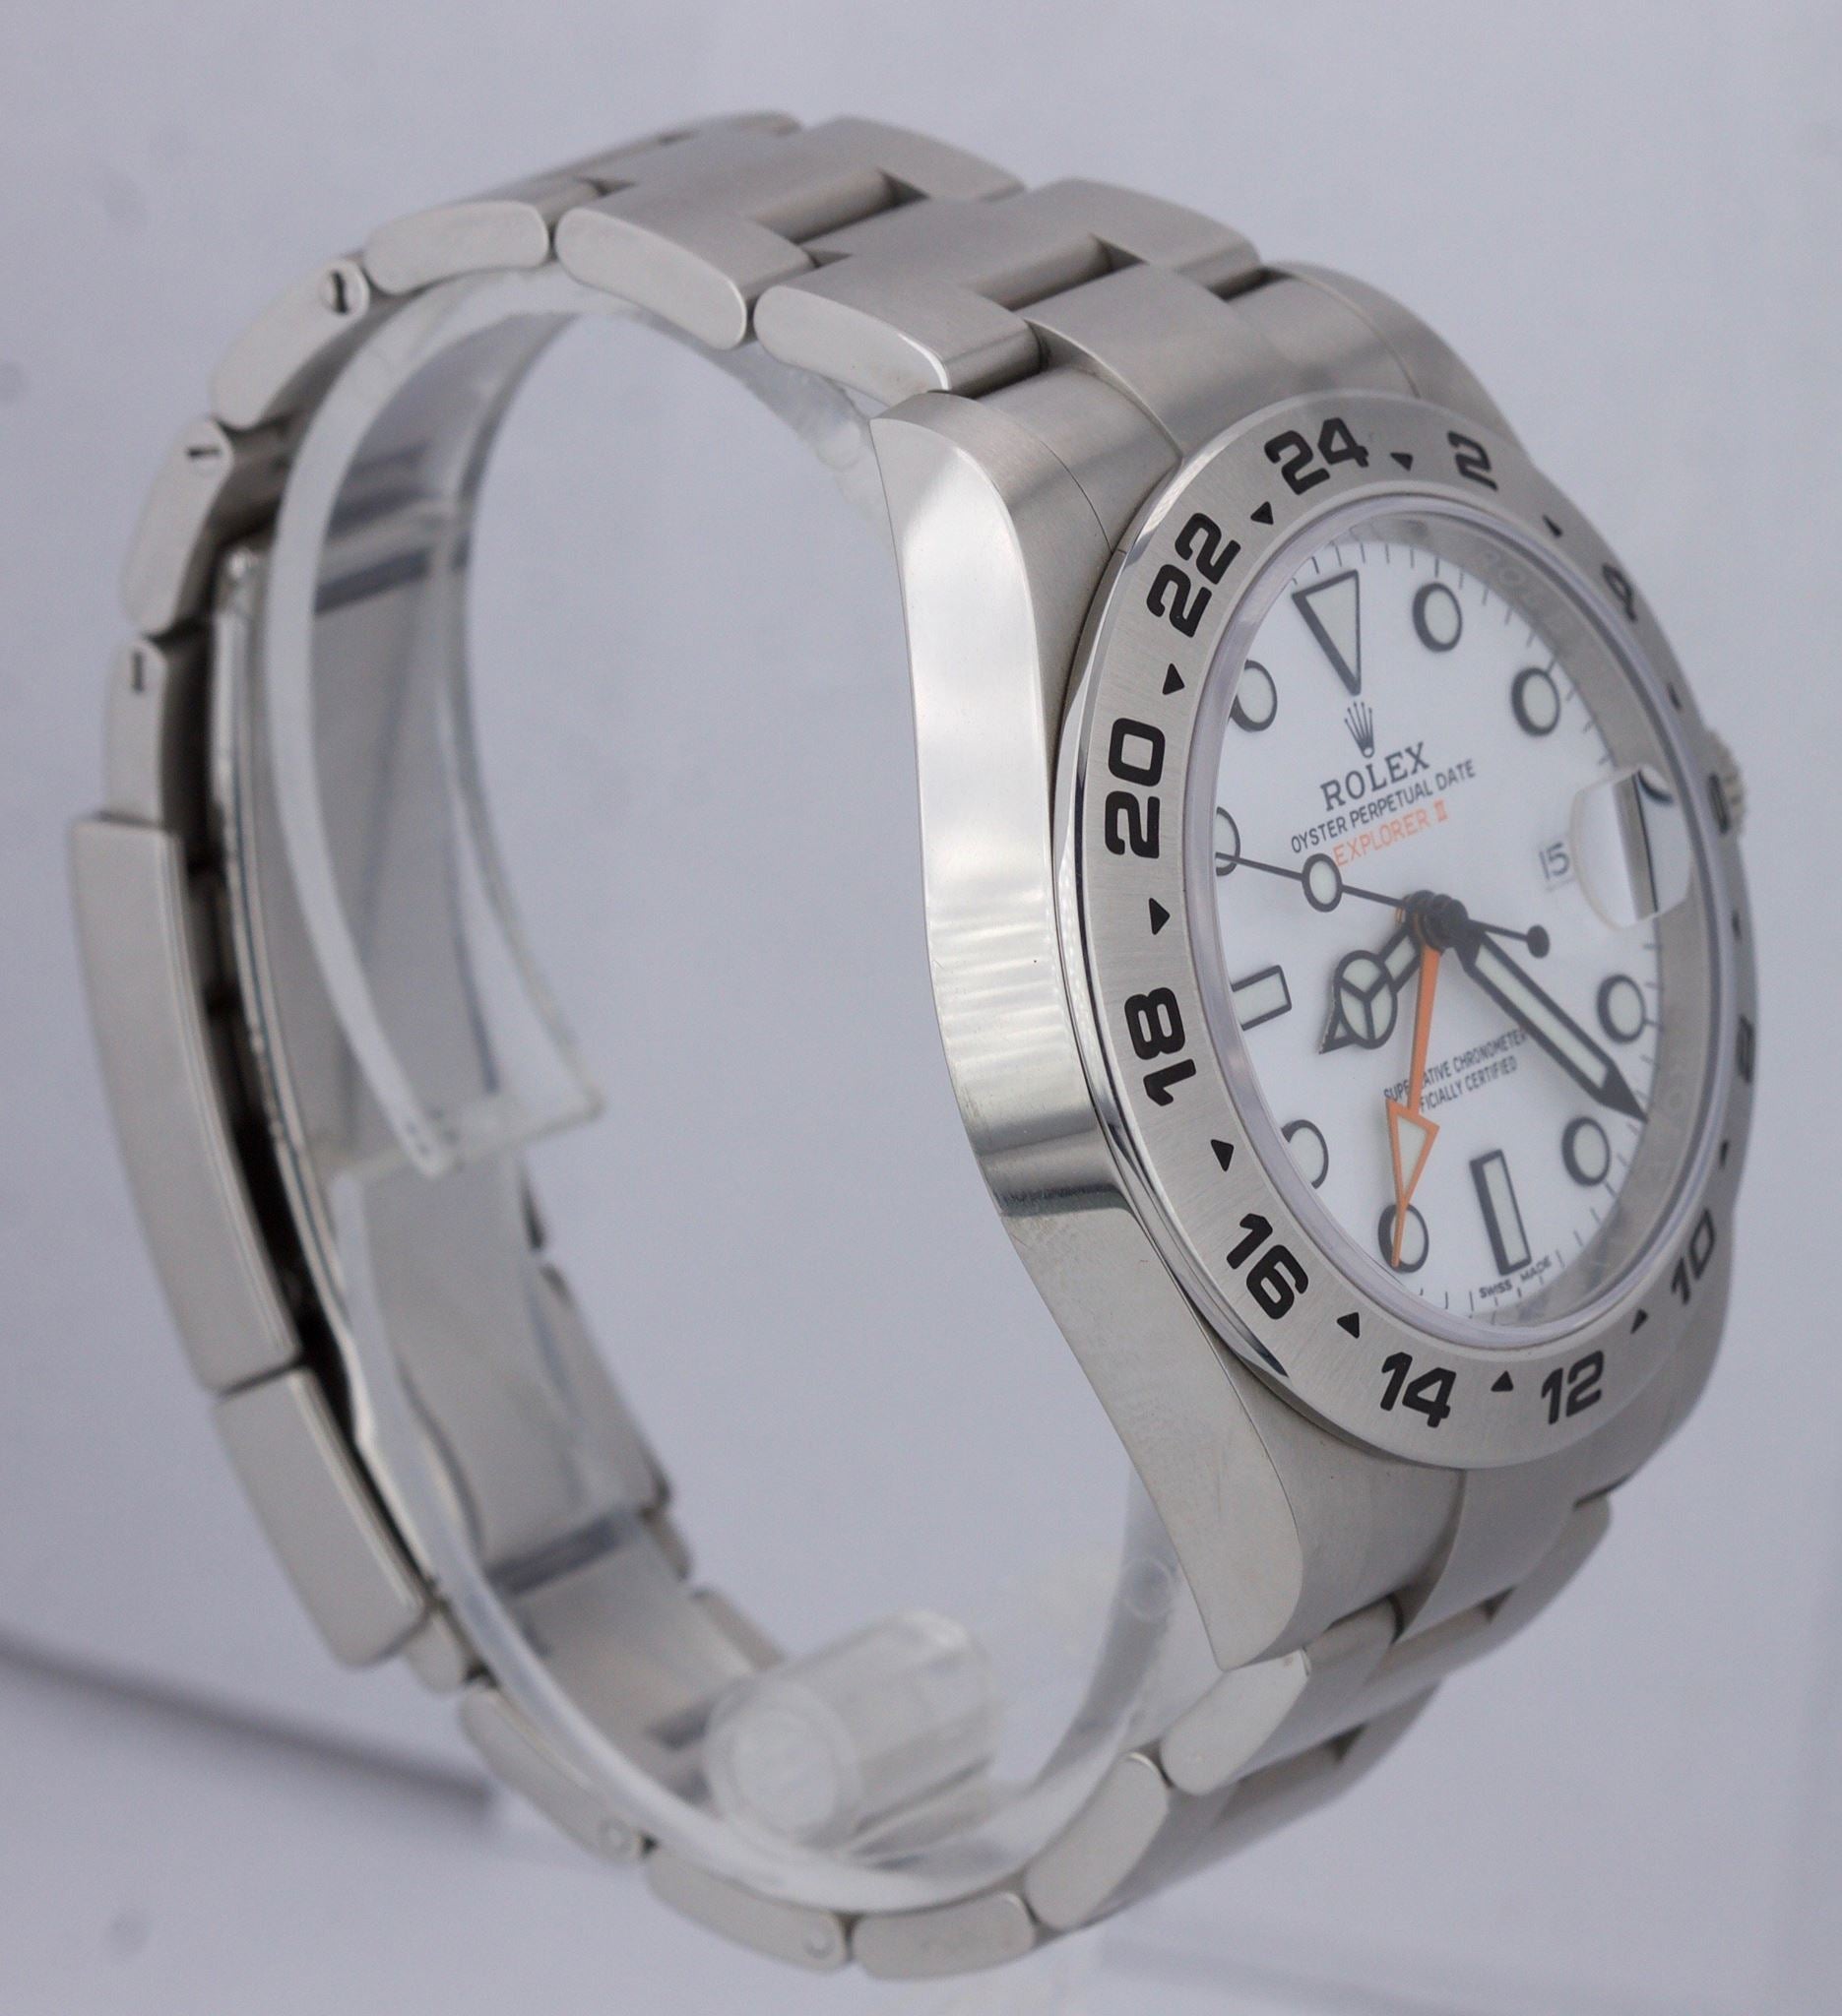 MINT 2018 Rolex Explorer II 42mm 216570 Polar White Orange Steel GMT Date Watch